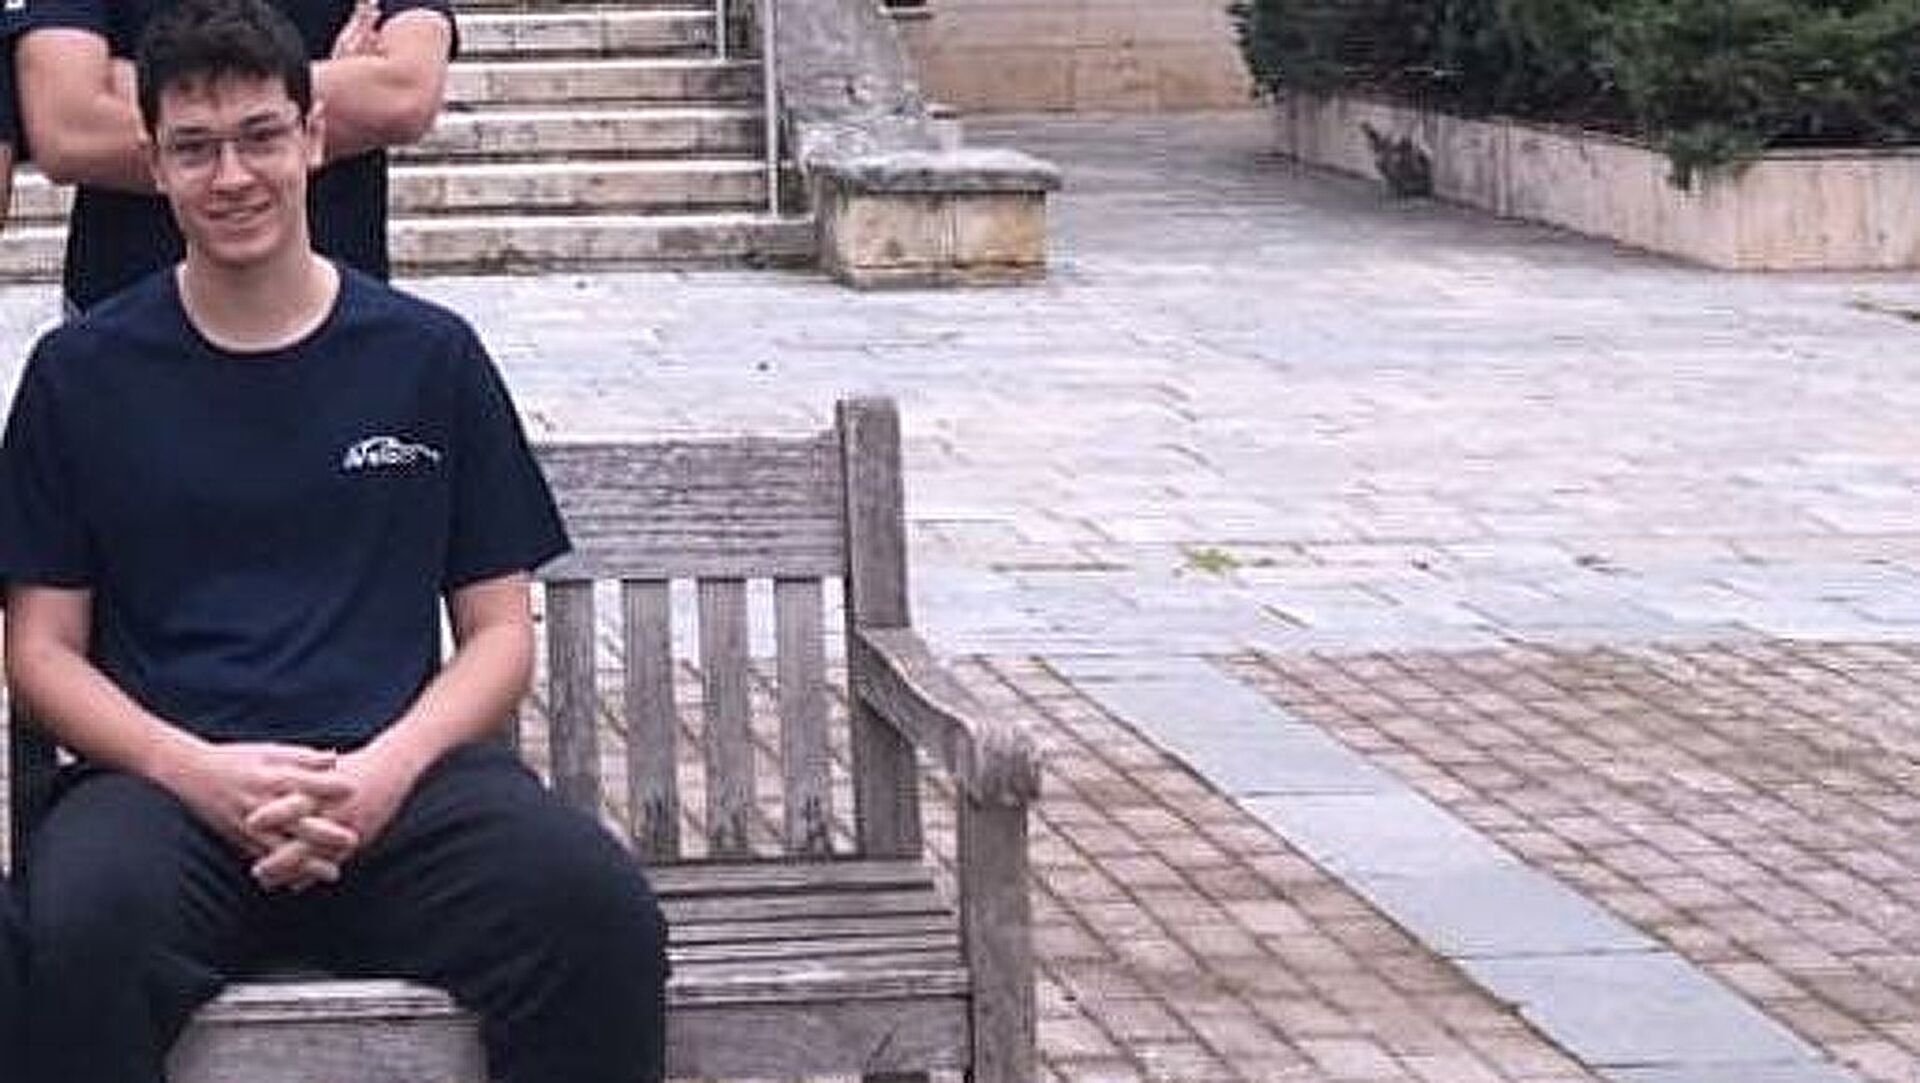 Θεσσαλονίκη: Μαθητής μπήκε στη στο Yale με υποτροφία 97%